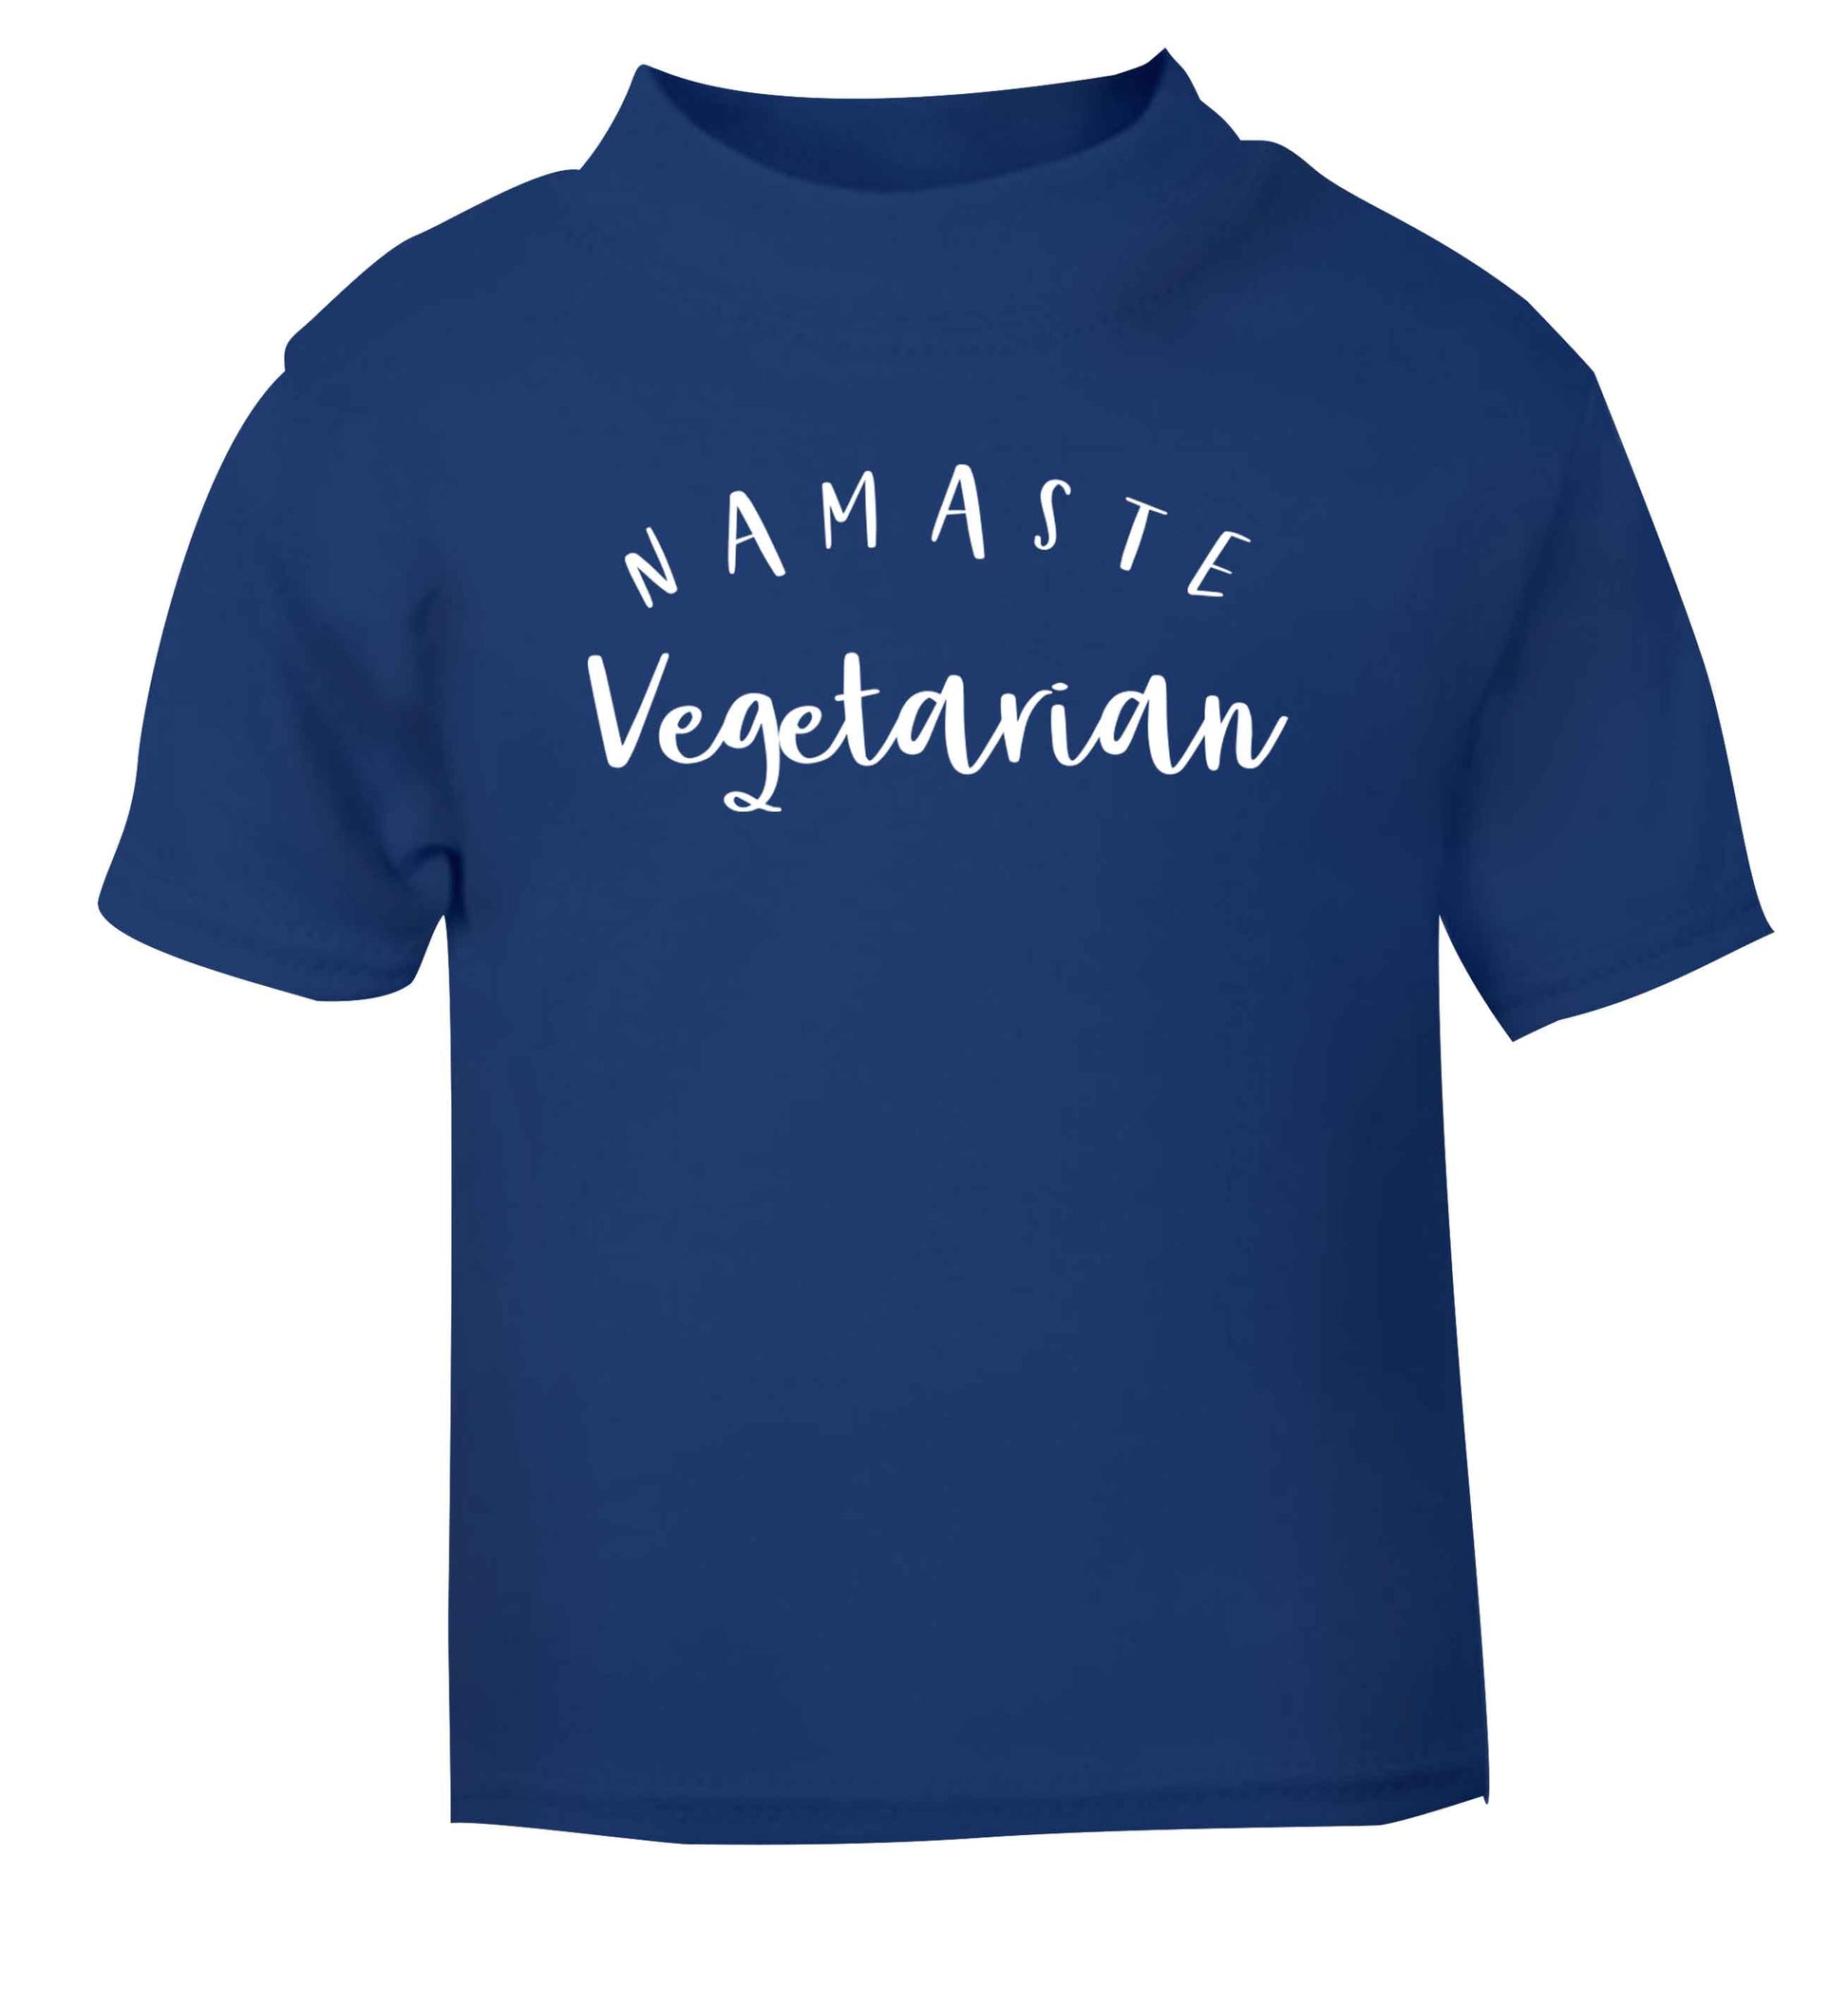 Namaste vegetarian blue Baby Toddler Tshirt 2 Years